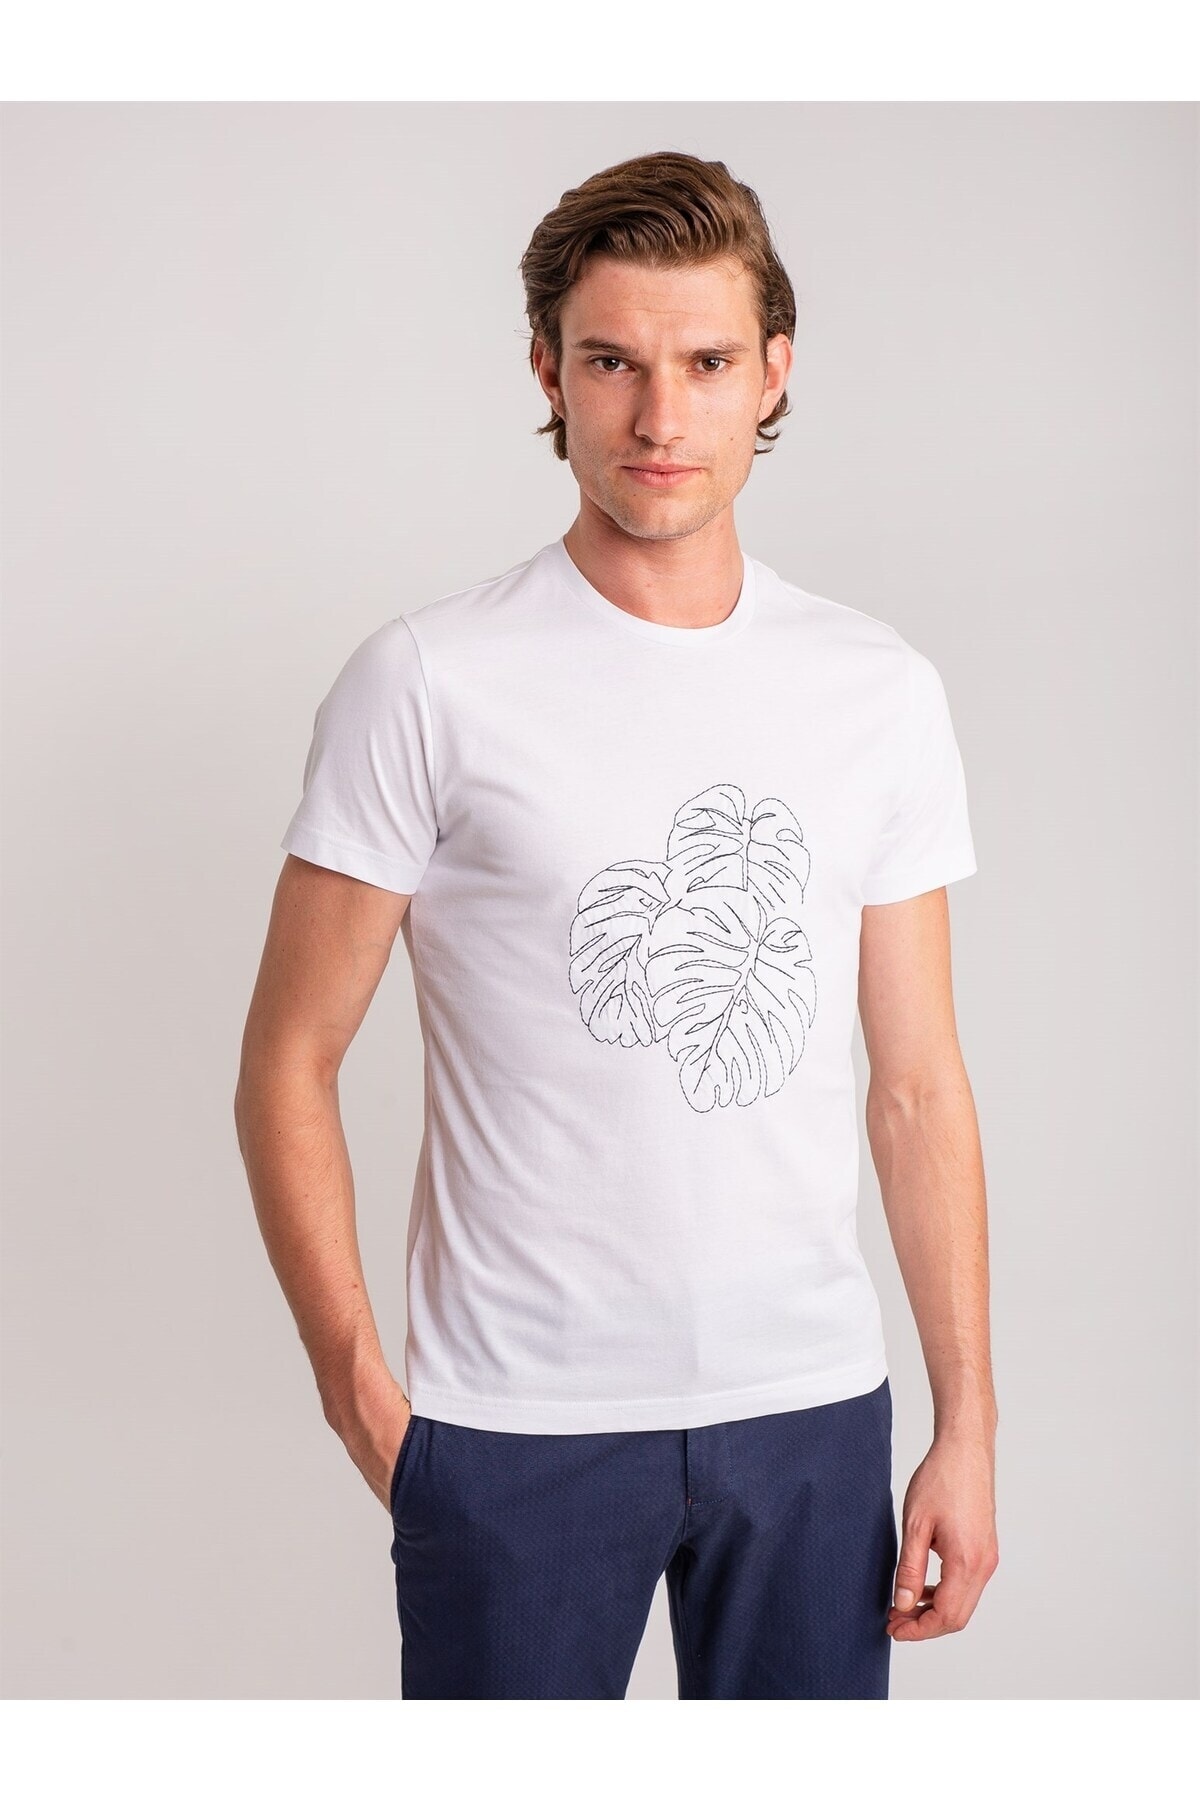 تی شرت سفید طرح چاپی یقه خدمه مدل اسلیم فیت آستین کوتاه مردانه دوفی Dufy (برند ترکیه)